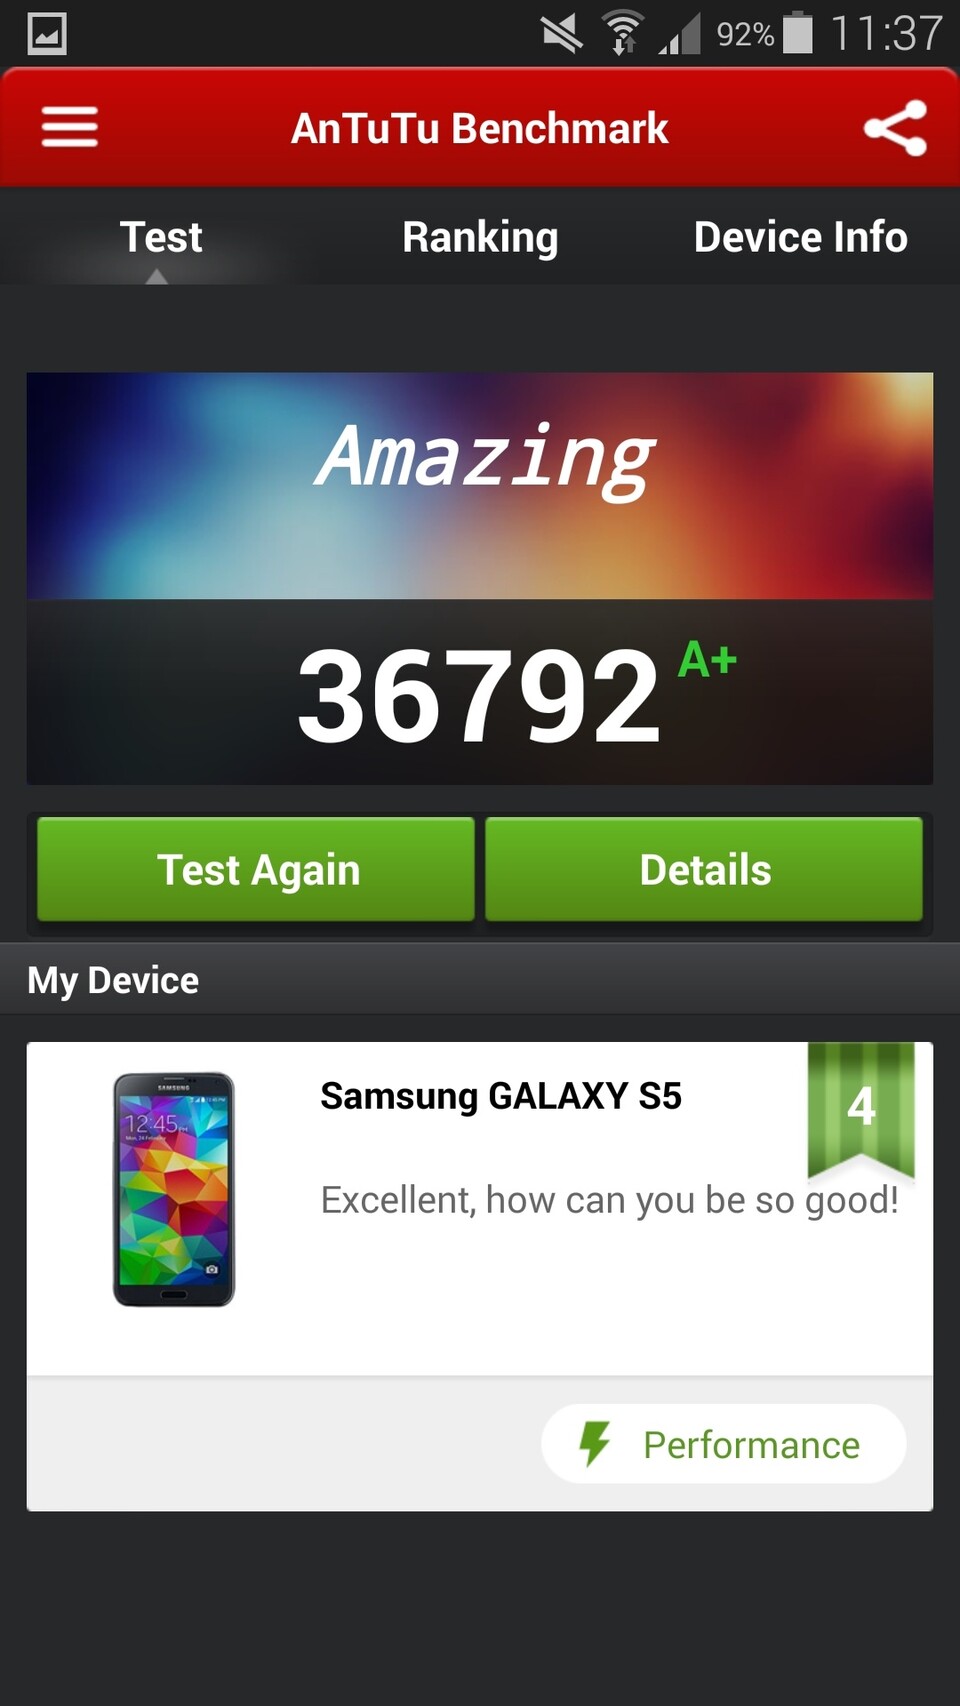 Antutu testet Smartphones auf ihre Rechenleistung und spuckt auf dem Galaxy S5 extrem hohe Ergebnisse aus.